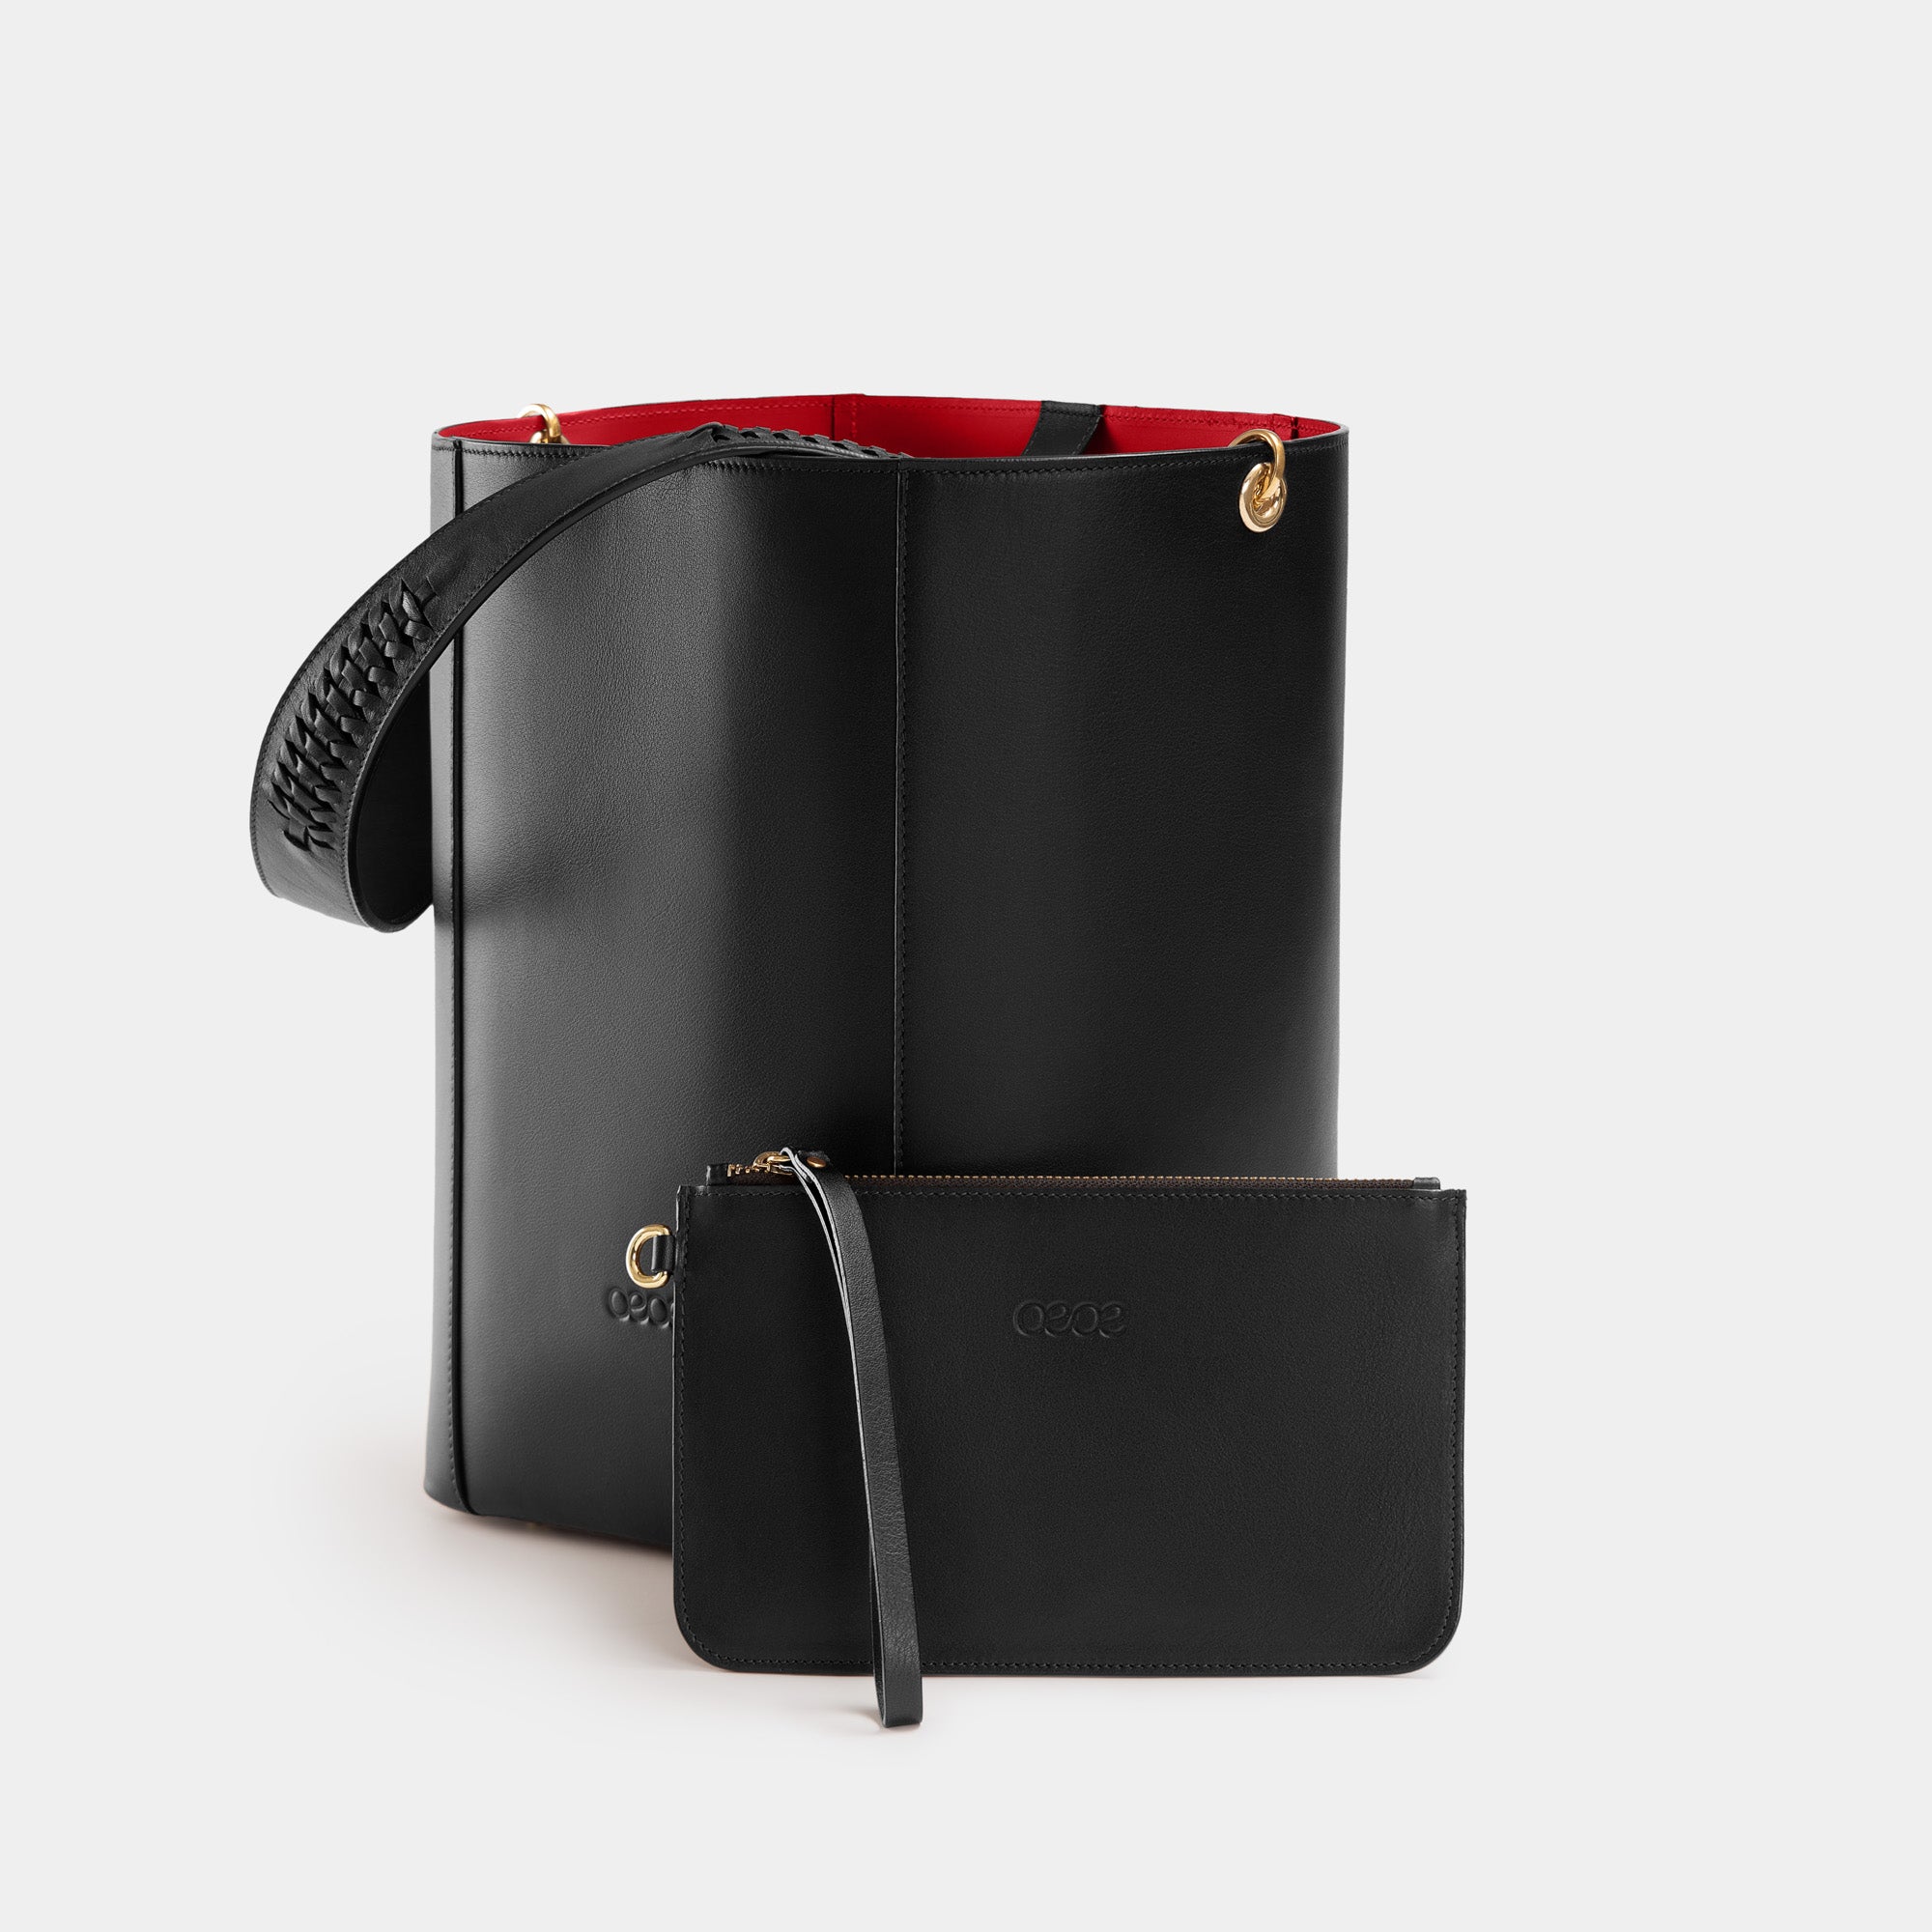 Bolso de piel negro - OEOE Handbags